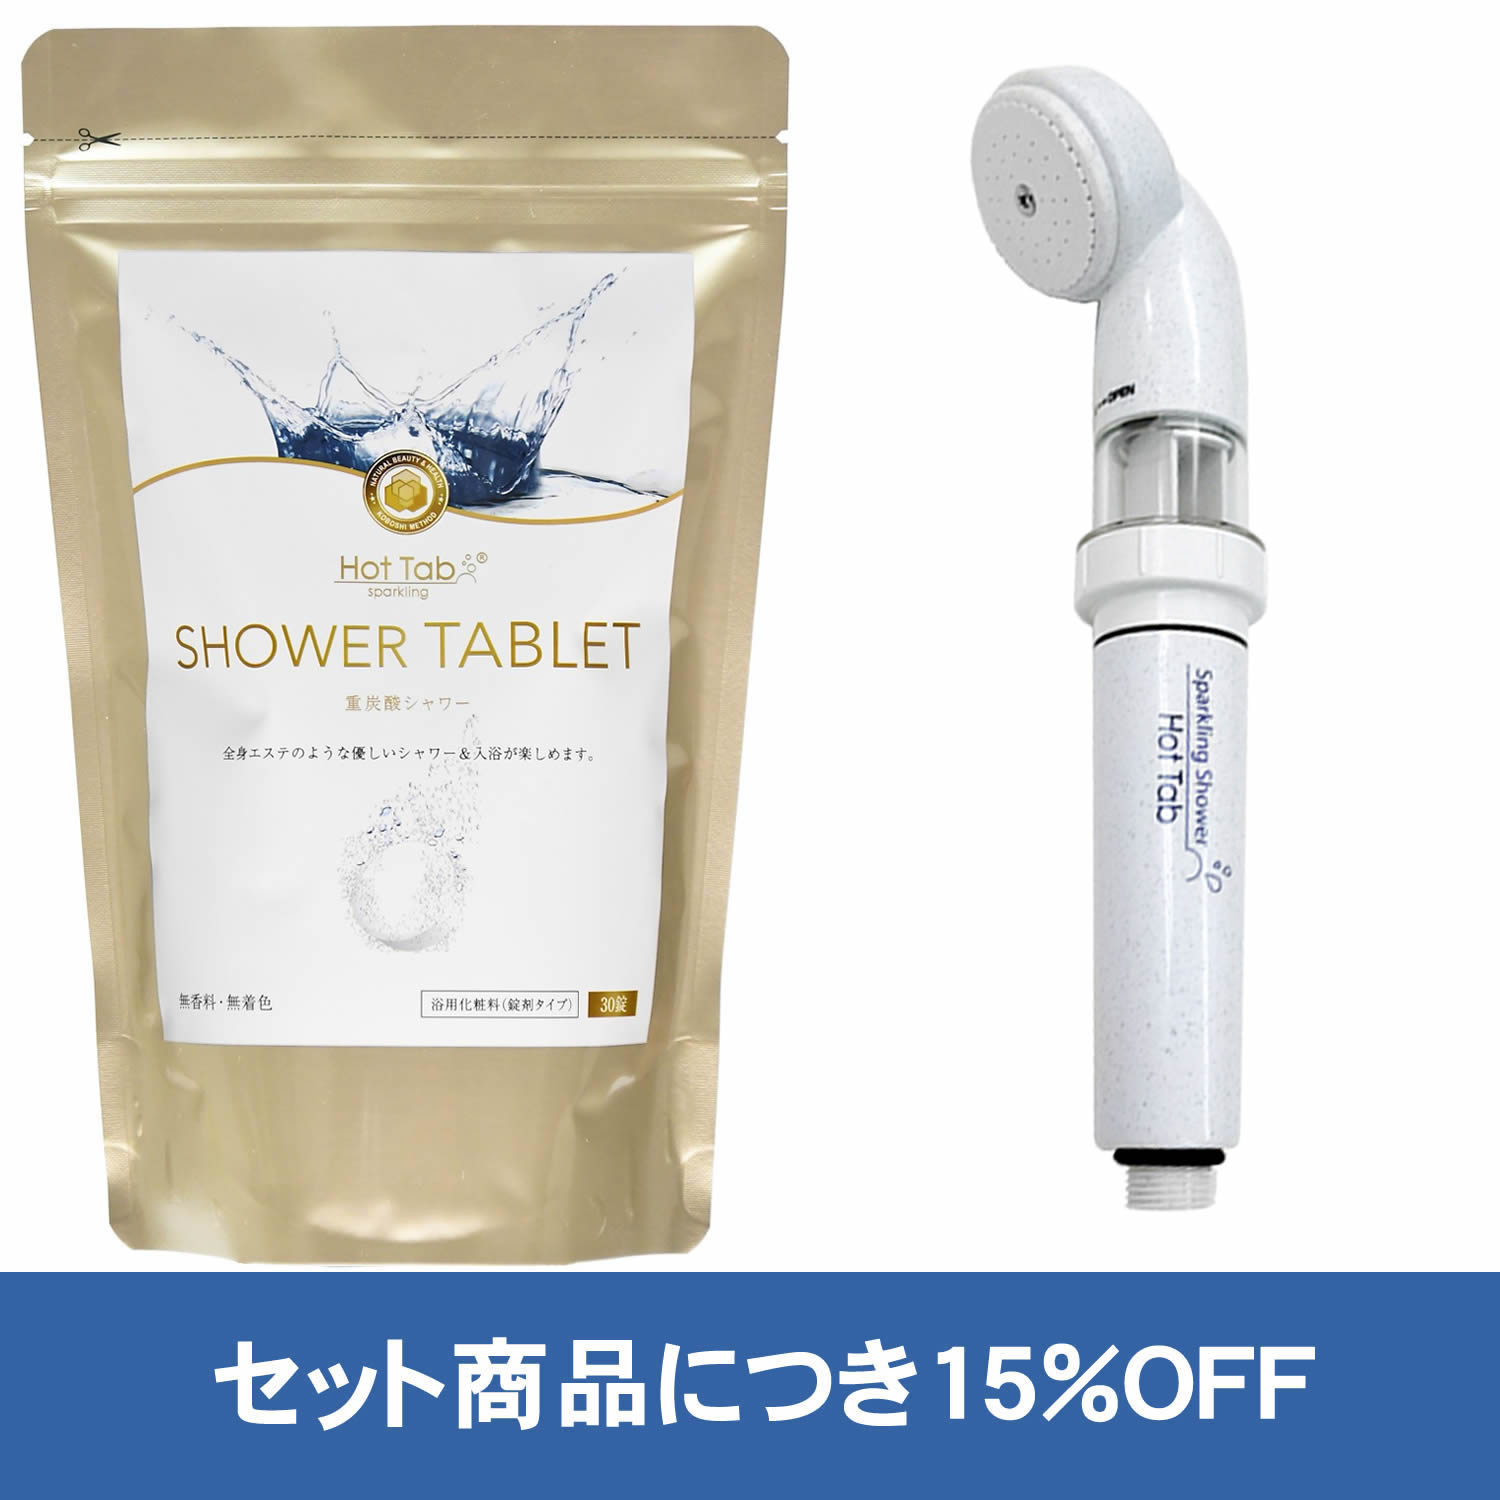 【公式】ホットタブ シャワータブレット SHOWER TABLET 30錠 重炭酸シャワー [浴用化粧料] ＋ 重炭酸Bioスパークリングシャワー [浴用化粧料用]